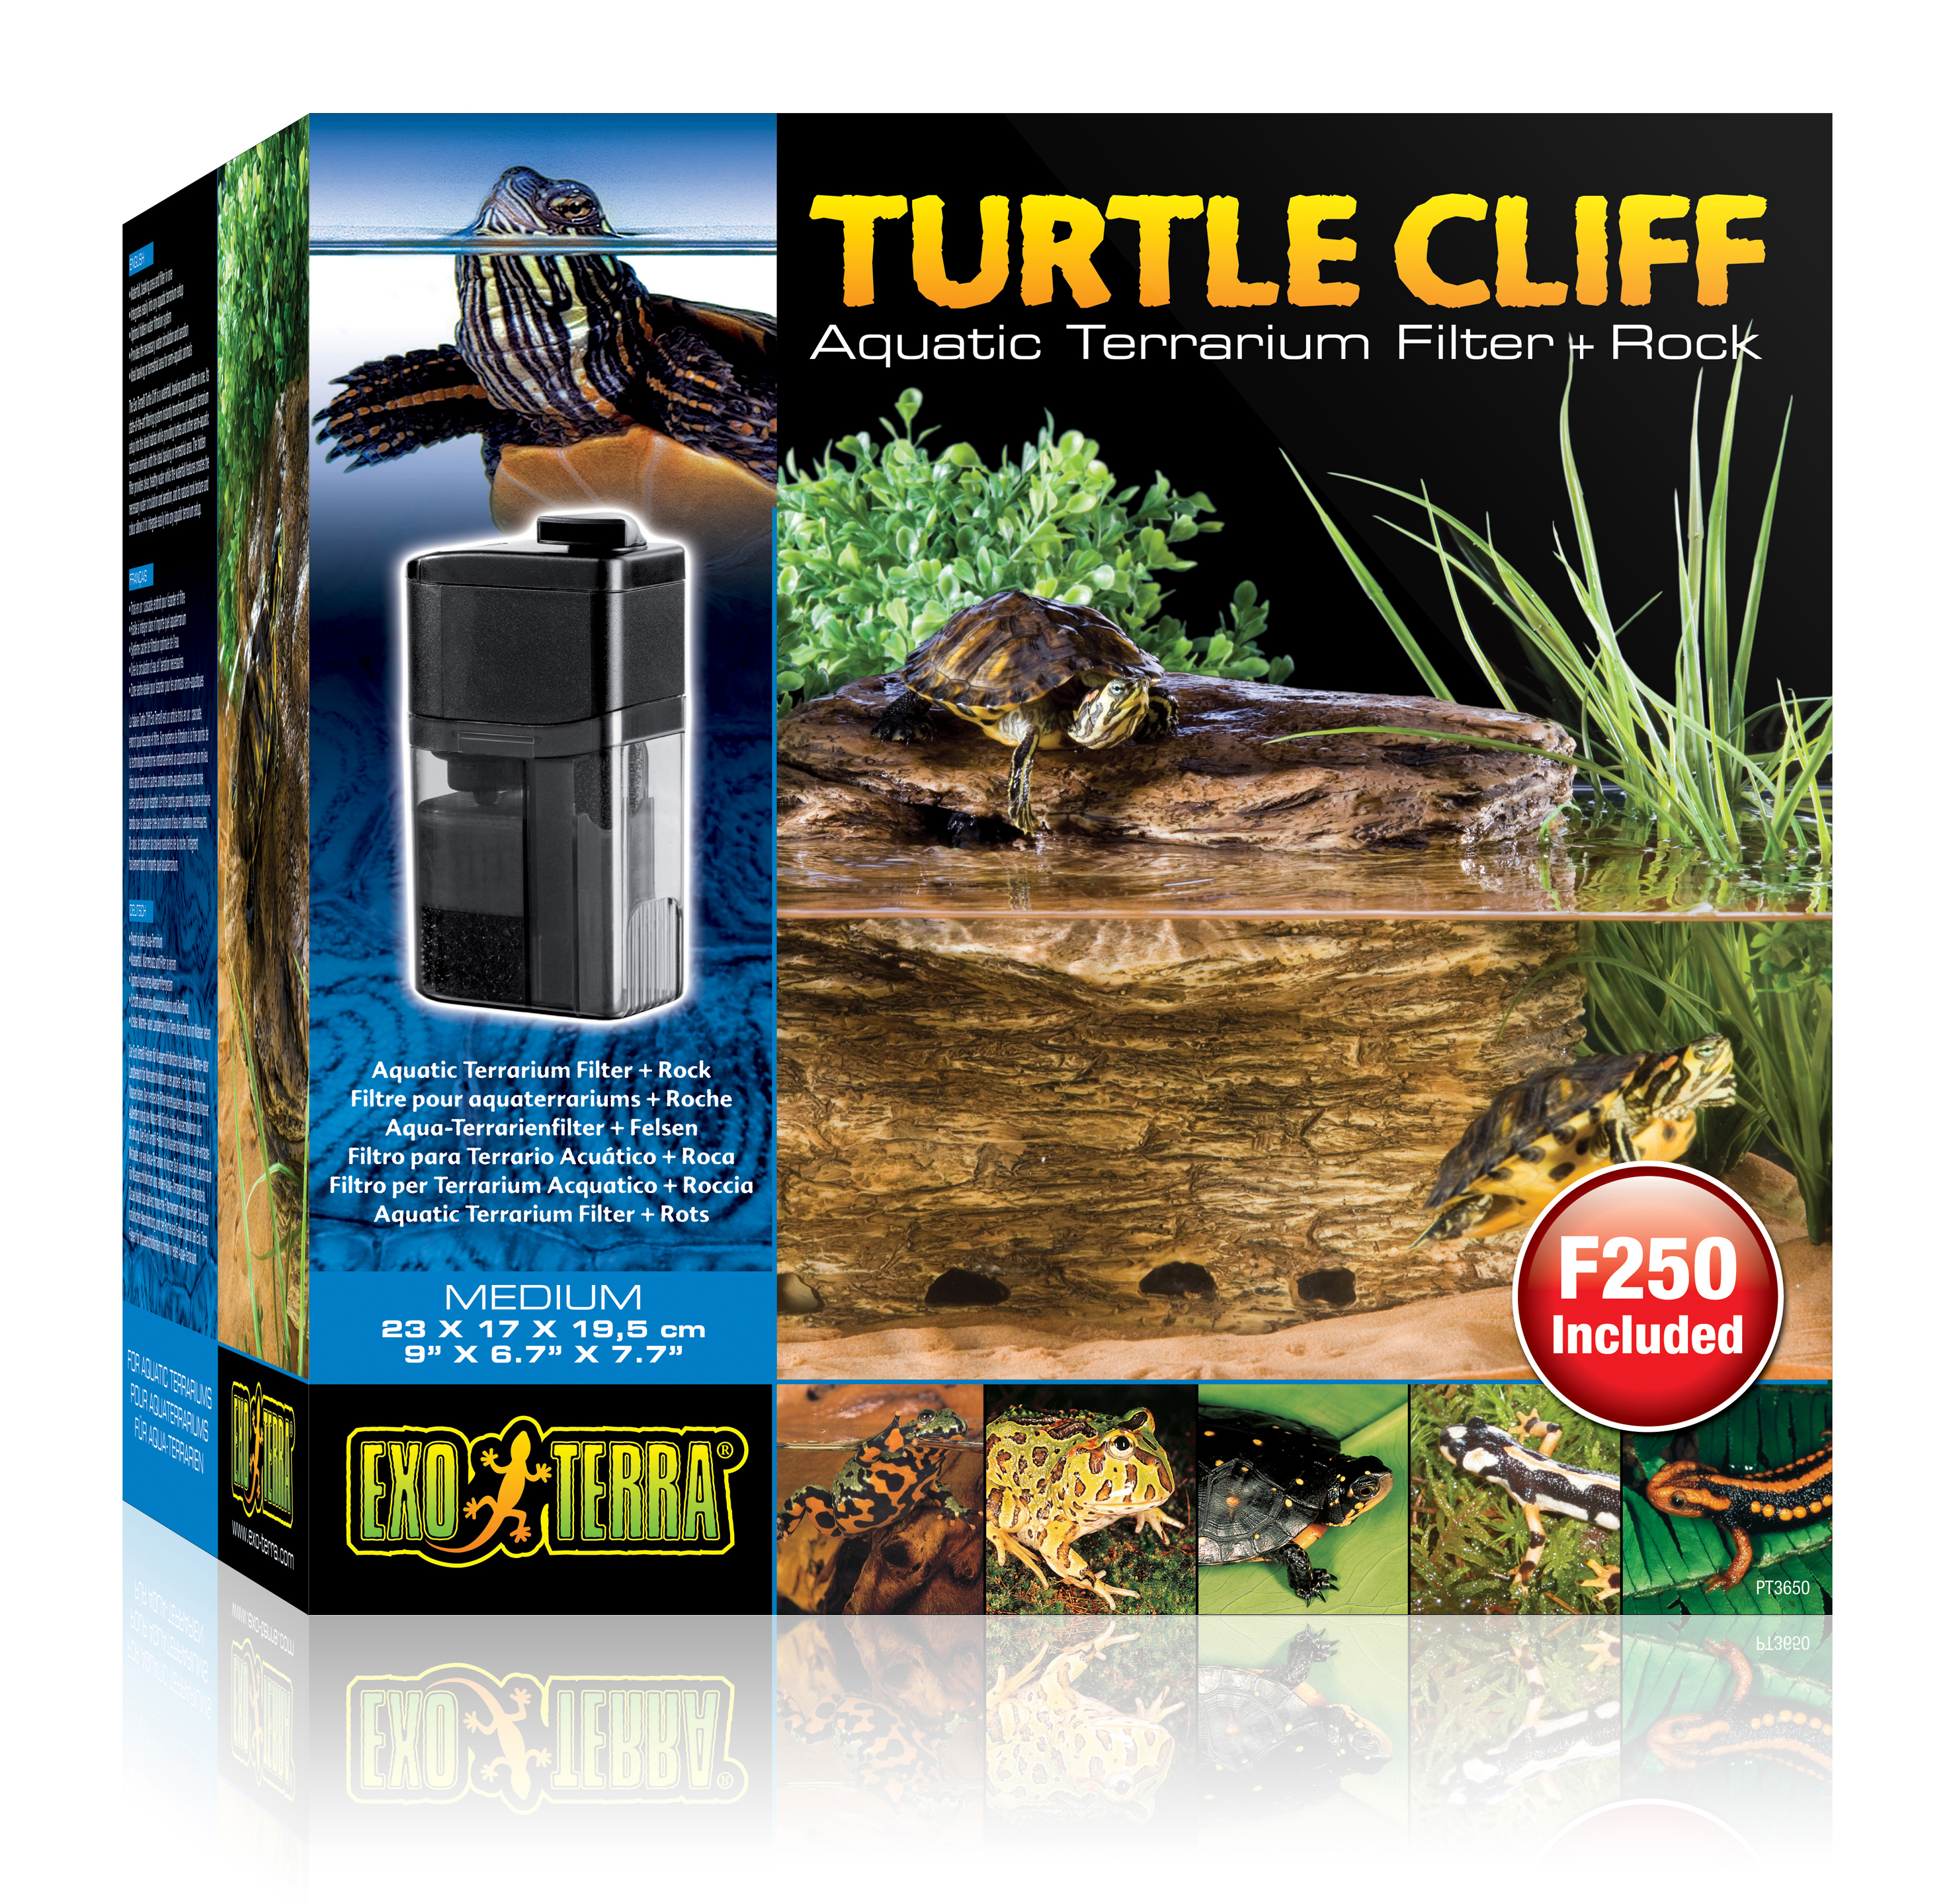 Ex turtle cliff aquatic terr. filter + rock - <Product shot>